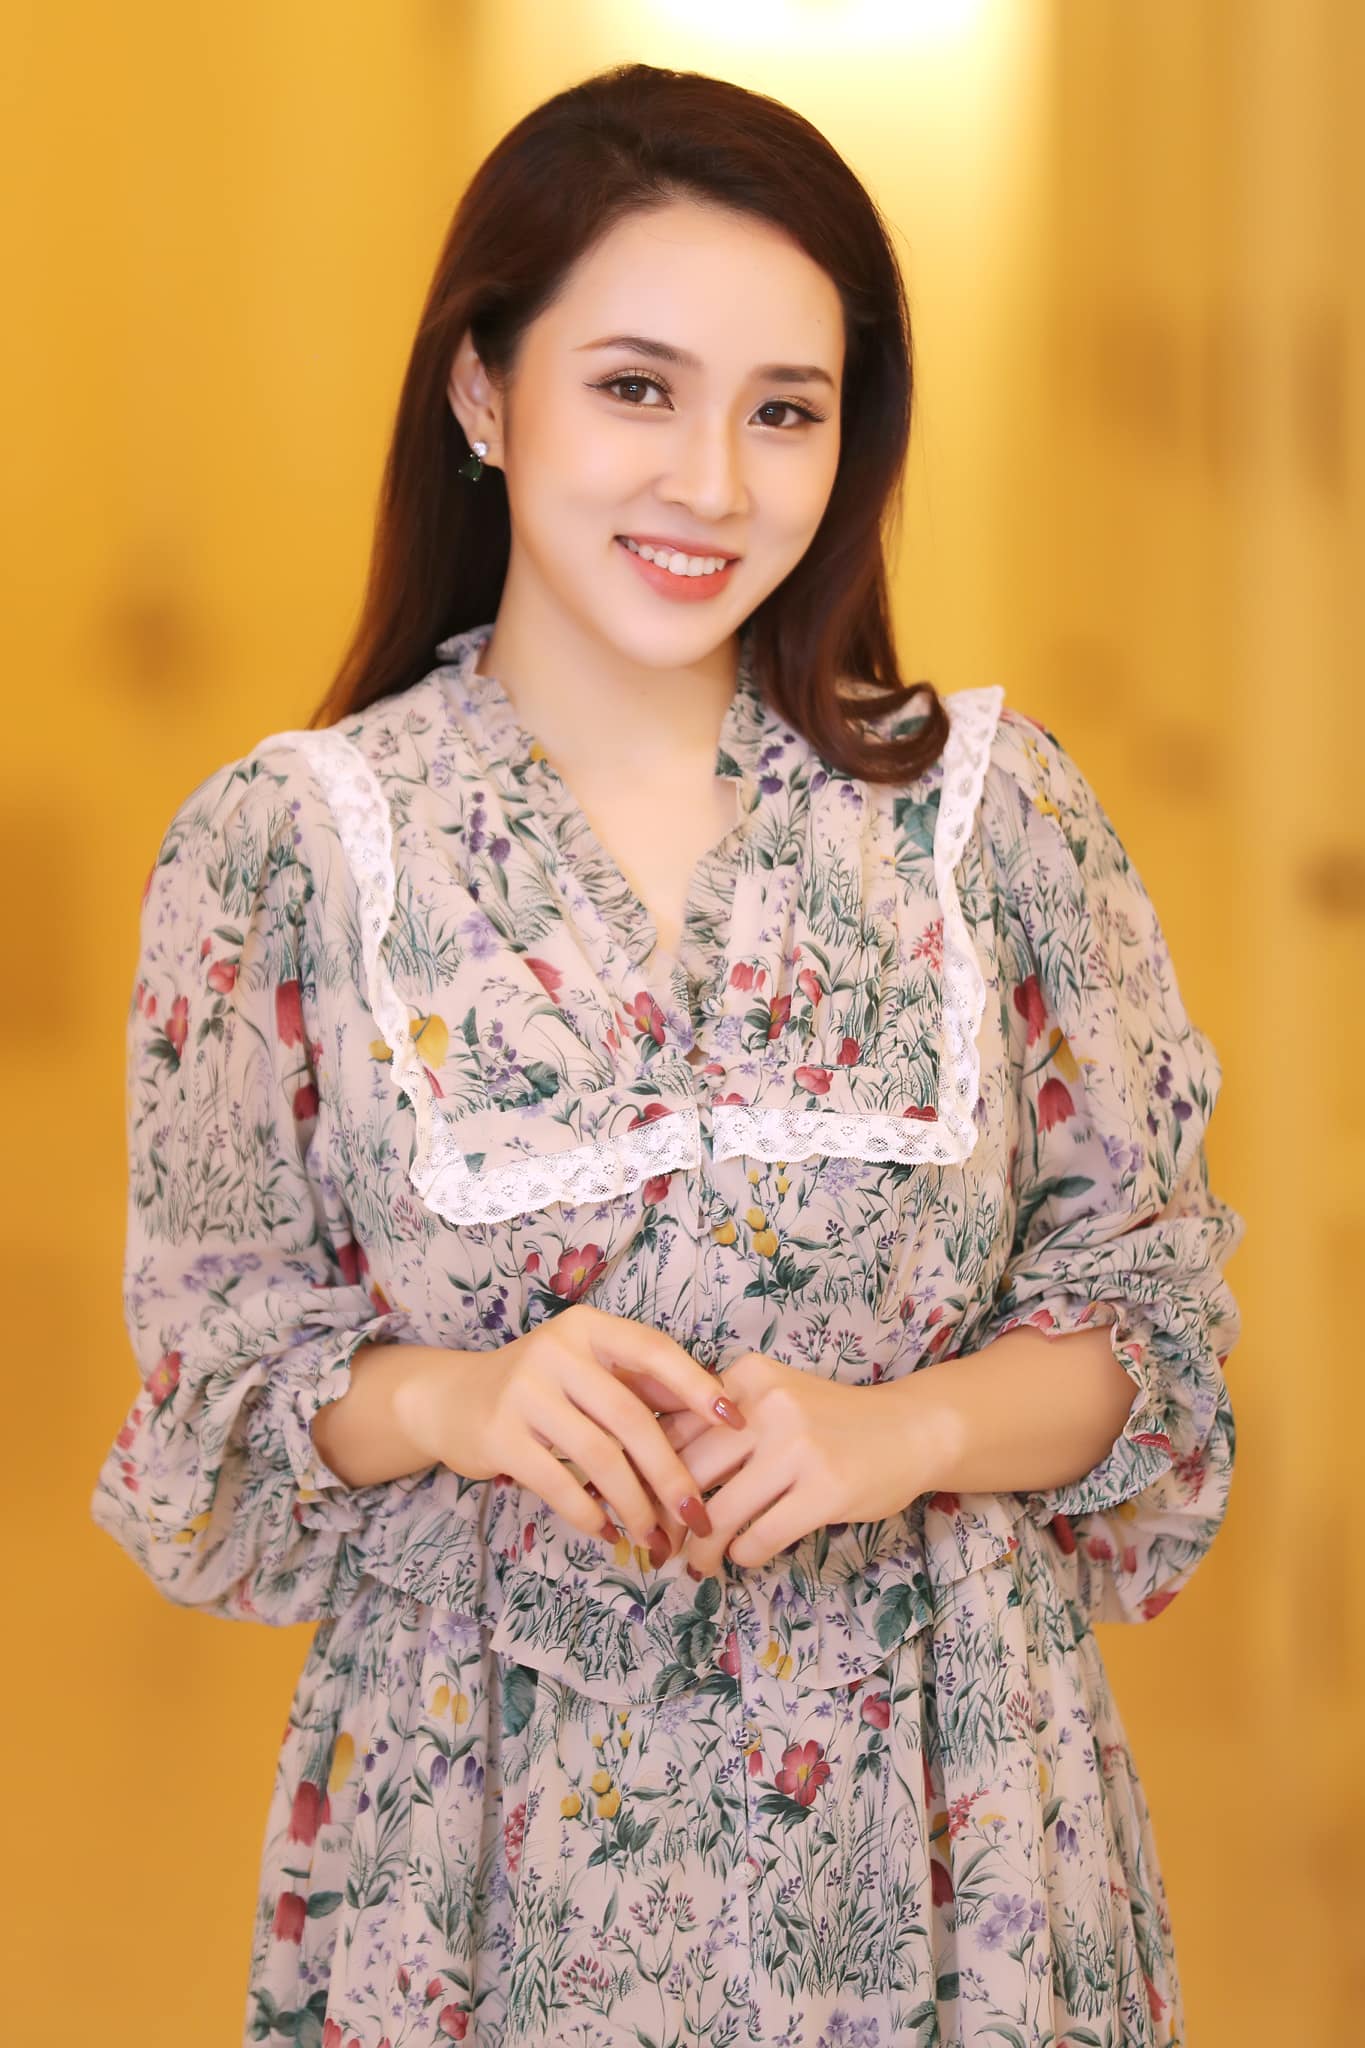 Với giọng hát ngọt ngào và phong cách trẻ trung, Bảo Trâm Vietnam Idol đang là một trong những nghệ sĩ được yêu thích nhất trong làng âm nhạc Việt Nam. Hãy thưởng thức những hình ảnh của cô để cảm nhận sự trẻ trung và năng động của cô.